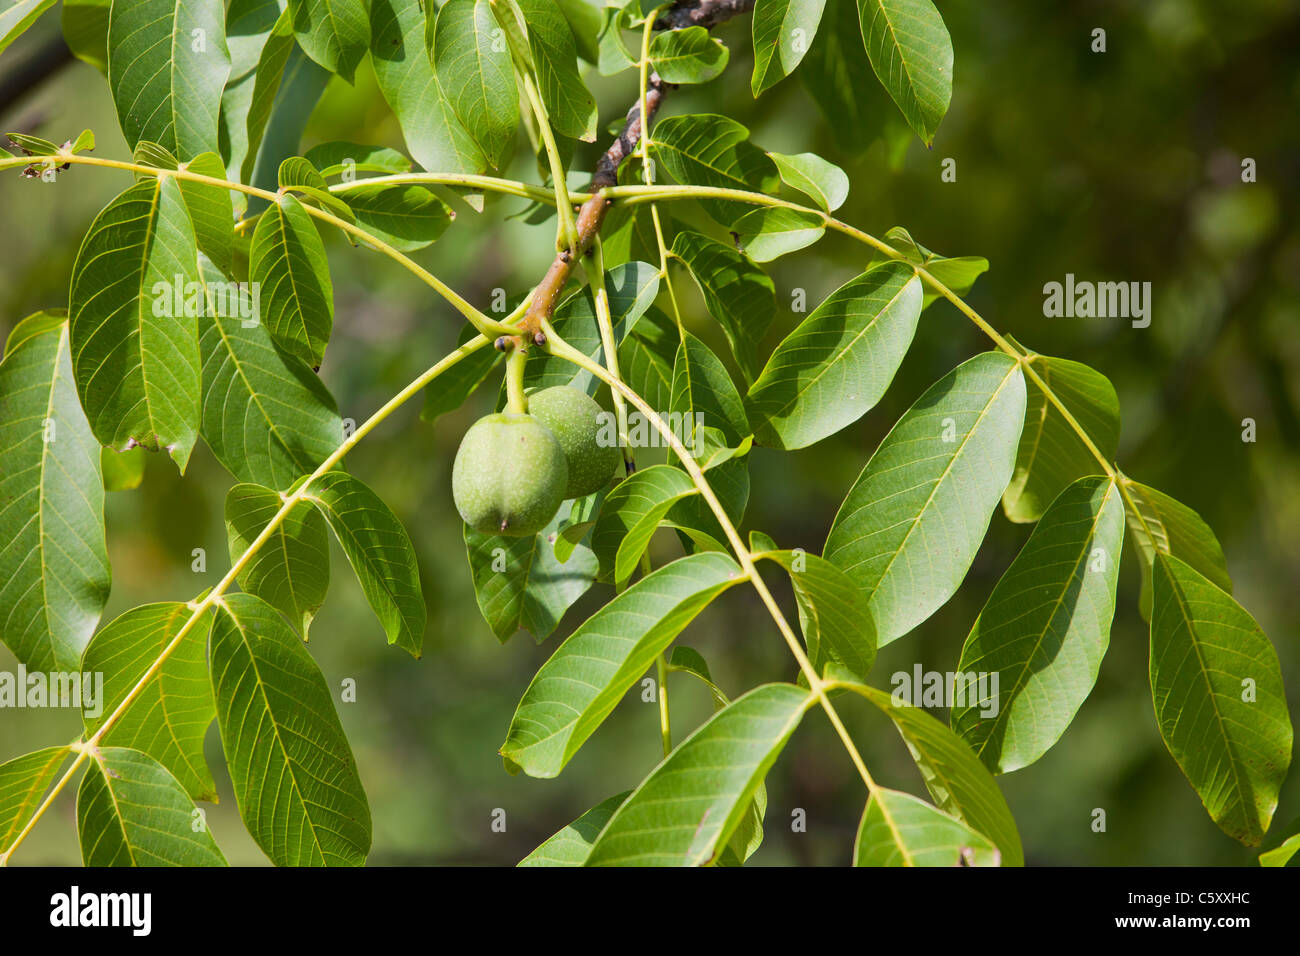 Green english Walnuts unripe Persian Walnut (Juglans regia) with leaves on walnut tree branch 119078_Wallnuts Stock Photo